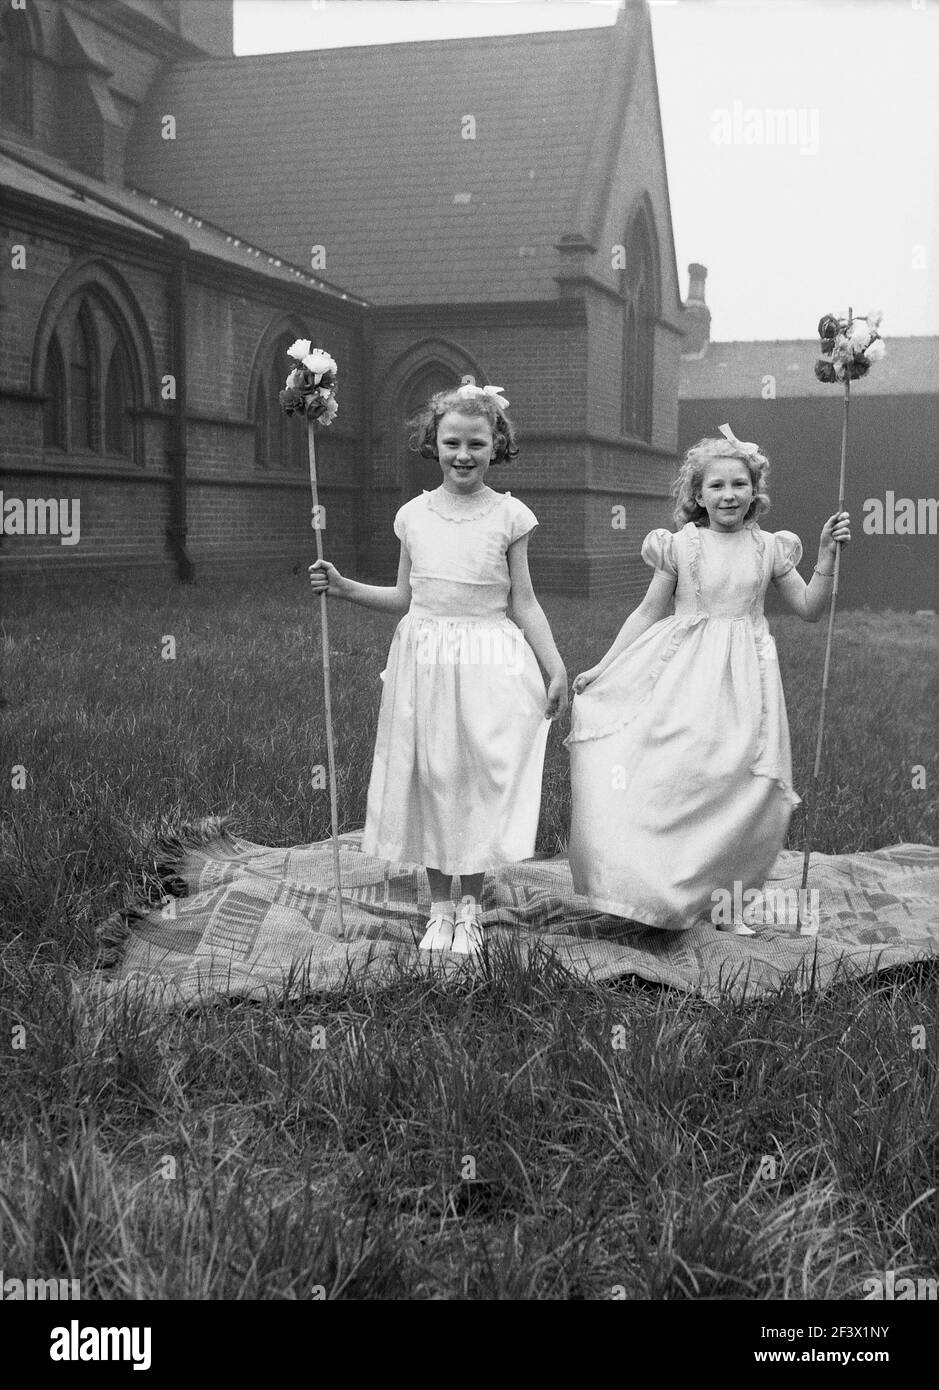 1958, historisch, frühlingshaft und zwei junge Mädchen in ihren Kostümen und mit Blumenstäben, die auf einem Teppich auf dem Gelände einer Kirche für ihr Foto stehen, bevor sie an der Parade und dem Festival am 1. Mai teilnehmen, Leeds, England, Großbritannien. Stockfoto